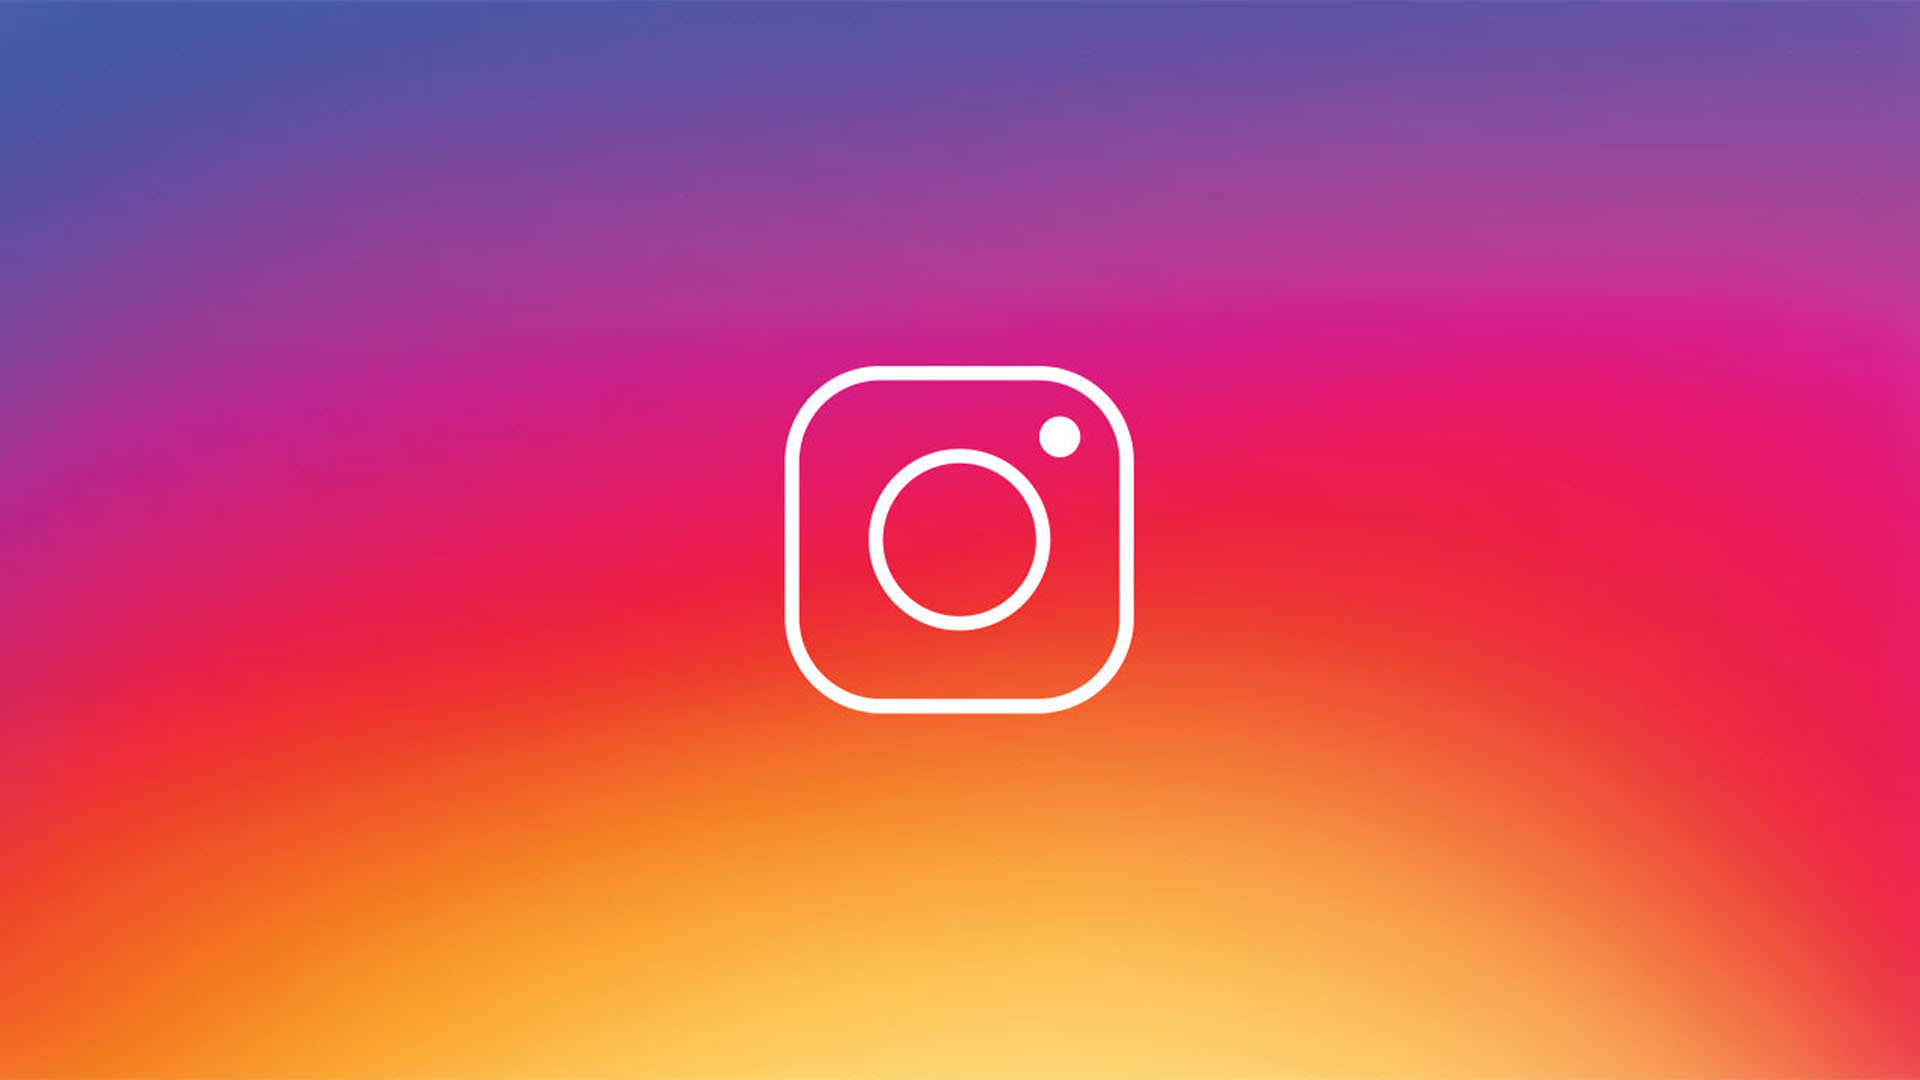 Instagrama yıllardır beklenen özellik sonunda geldi! Artık hikayelerde kullanılabilecek!